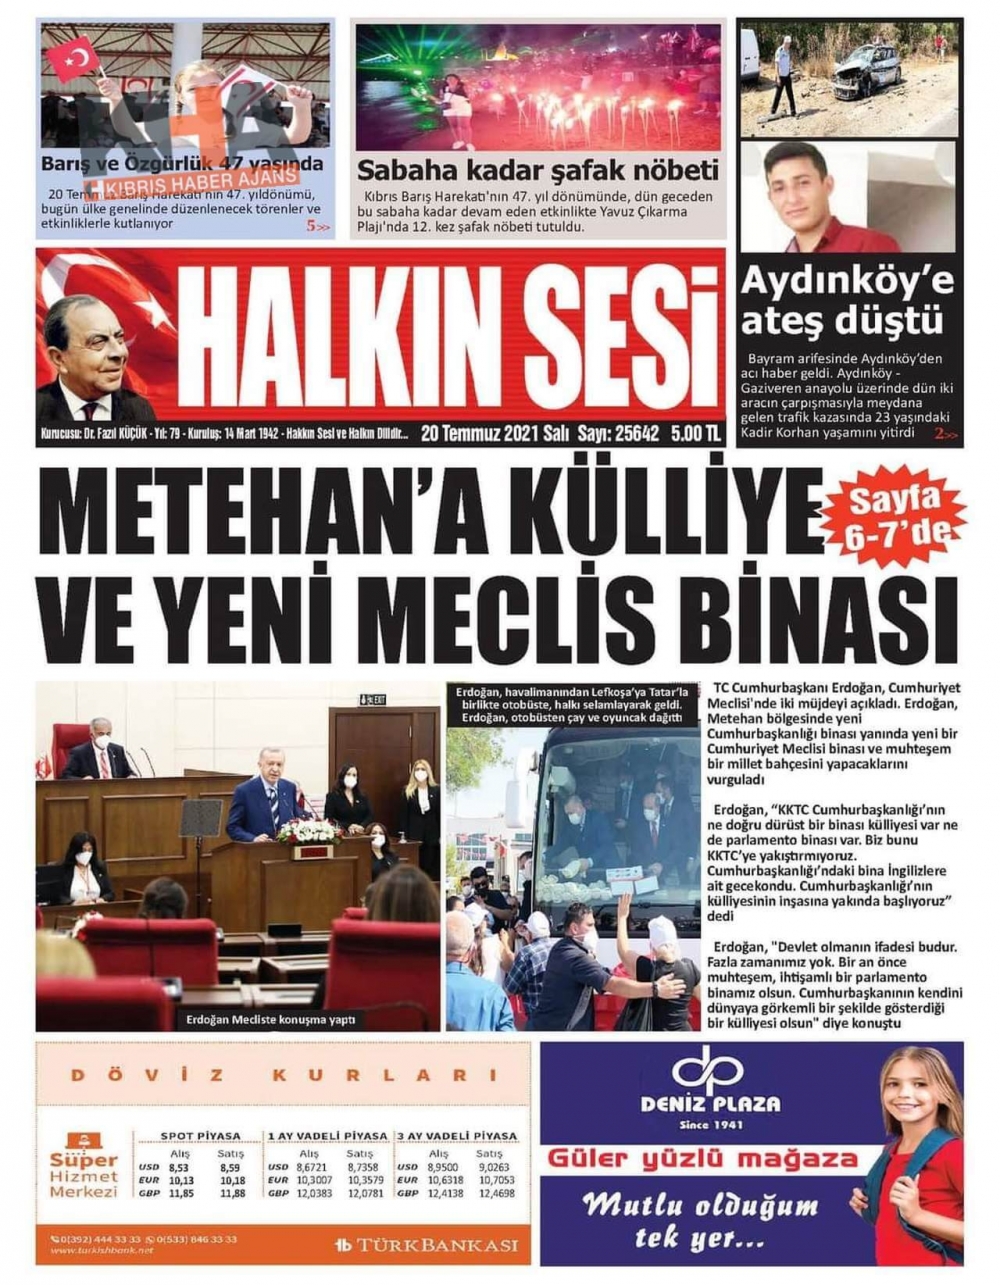 KKTC'de basılı gazeteler Erdoğan'ın Müjdesini nasıl gördü? galerisi resim 5